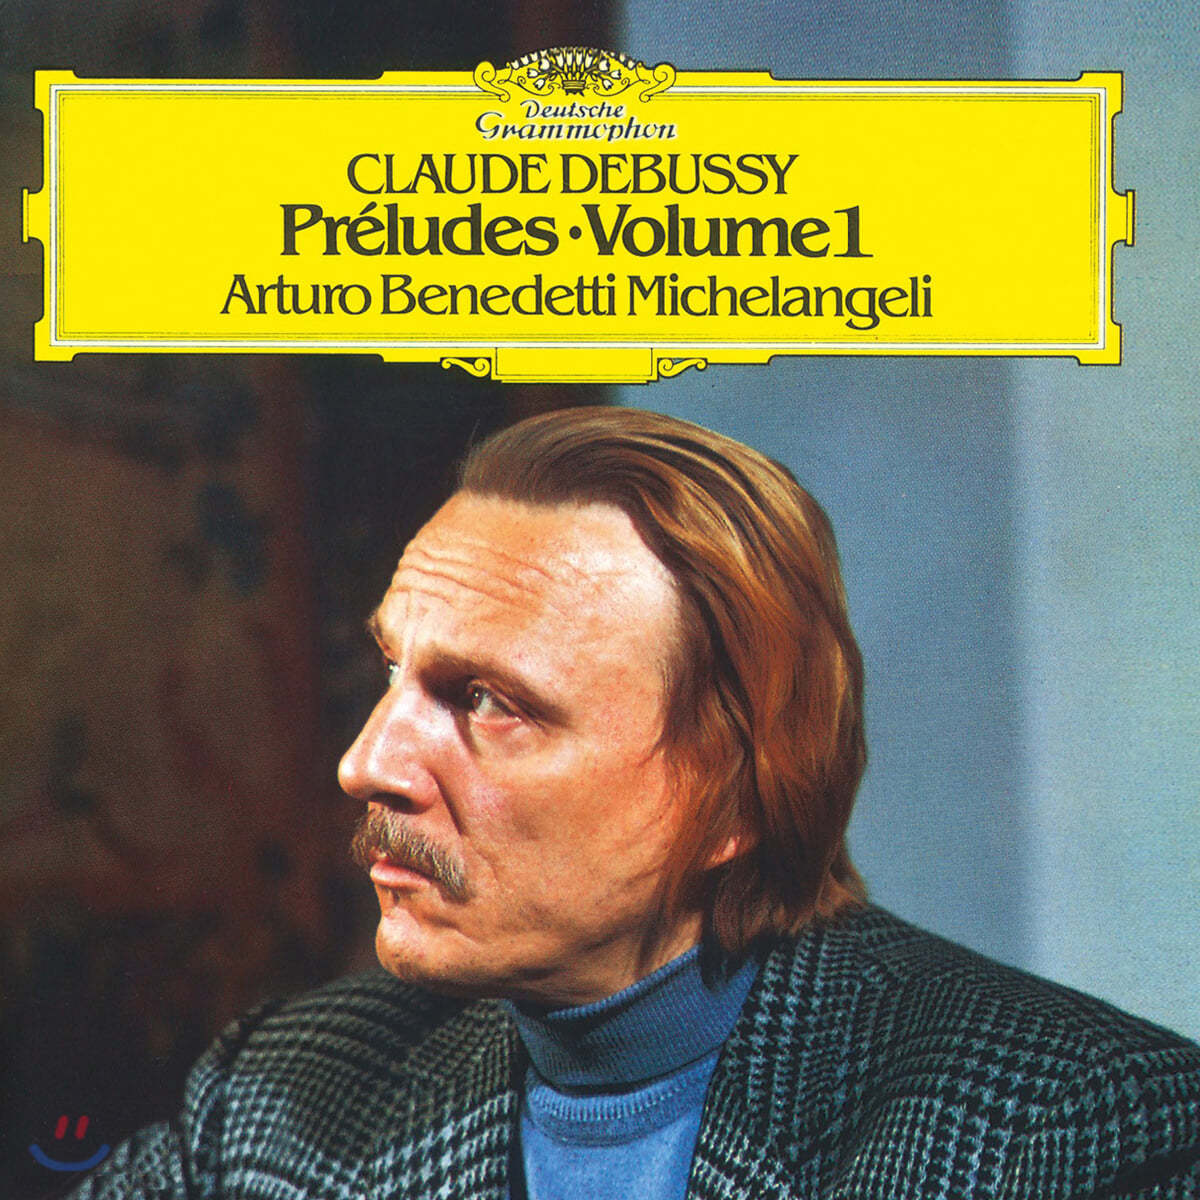 Arturo Benedetti Michelangeli 드뷔시: 전주곡 1권 - 미켈란젤리 (Debussy: Preludes Vol. 1) [LP]